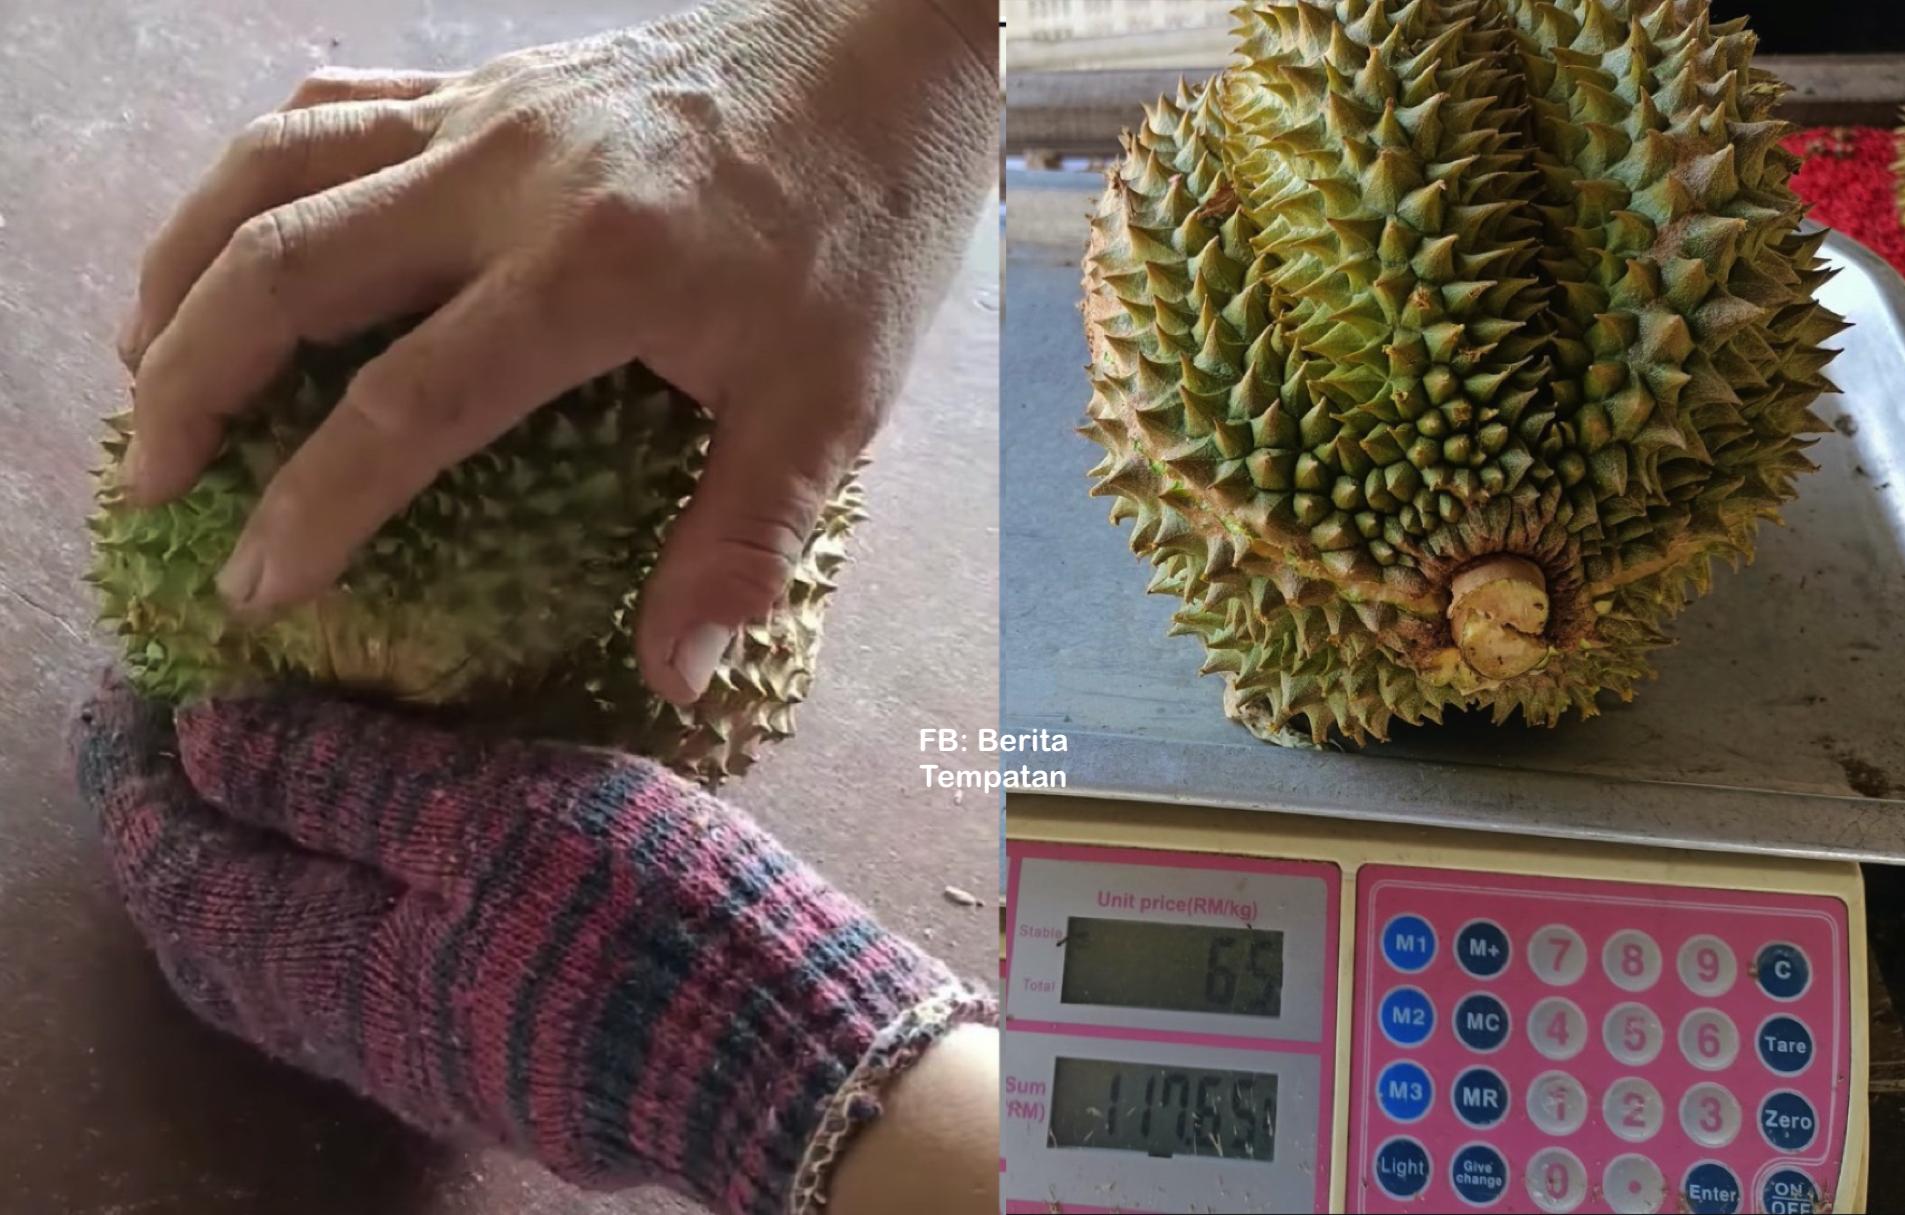 Beli Durian Duri Hitam (Black Thorn) Harga RM117, Lelaki Tergaman Melihat Isi Dalamnya